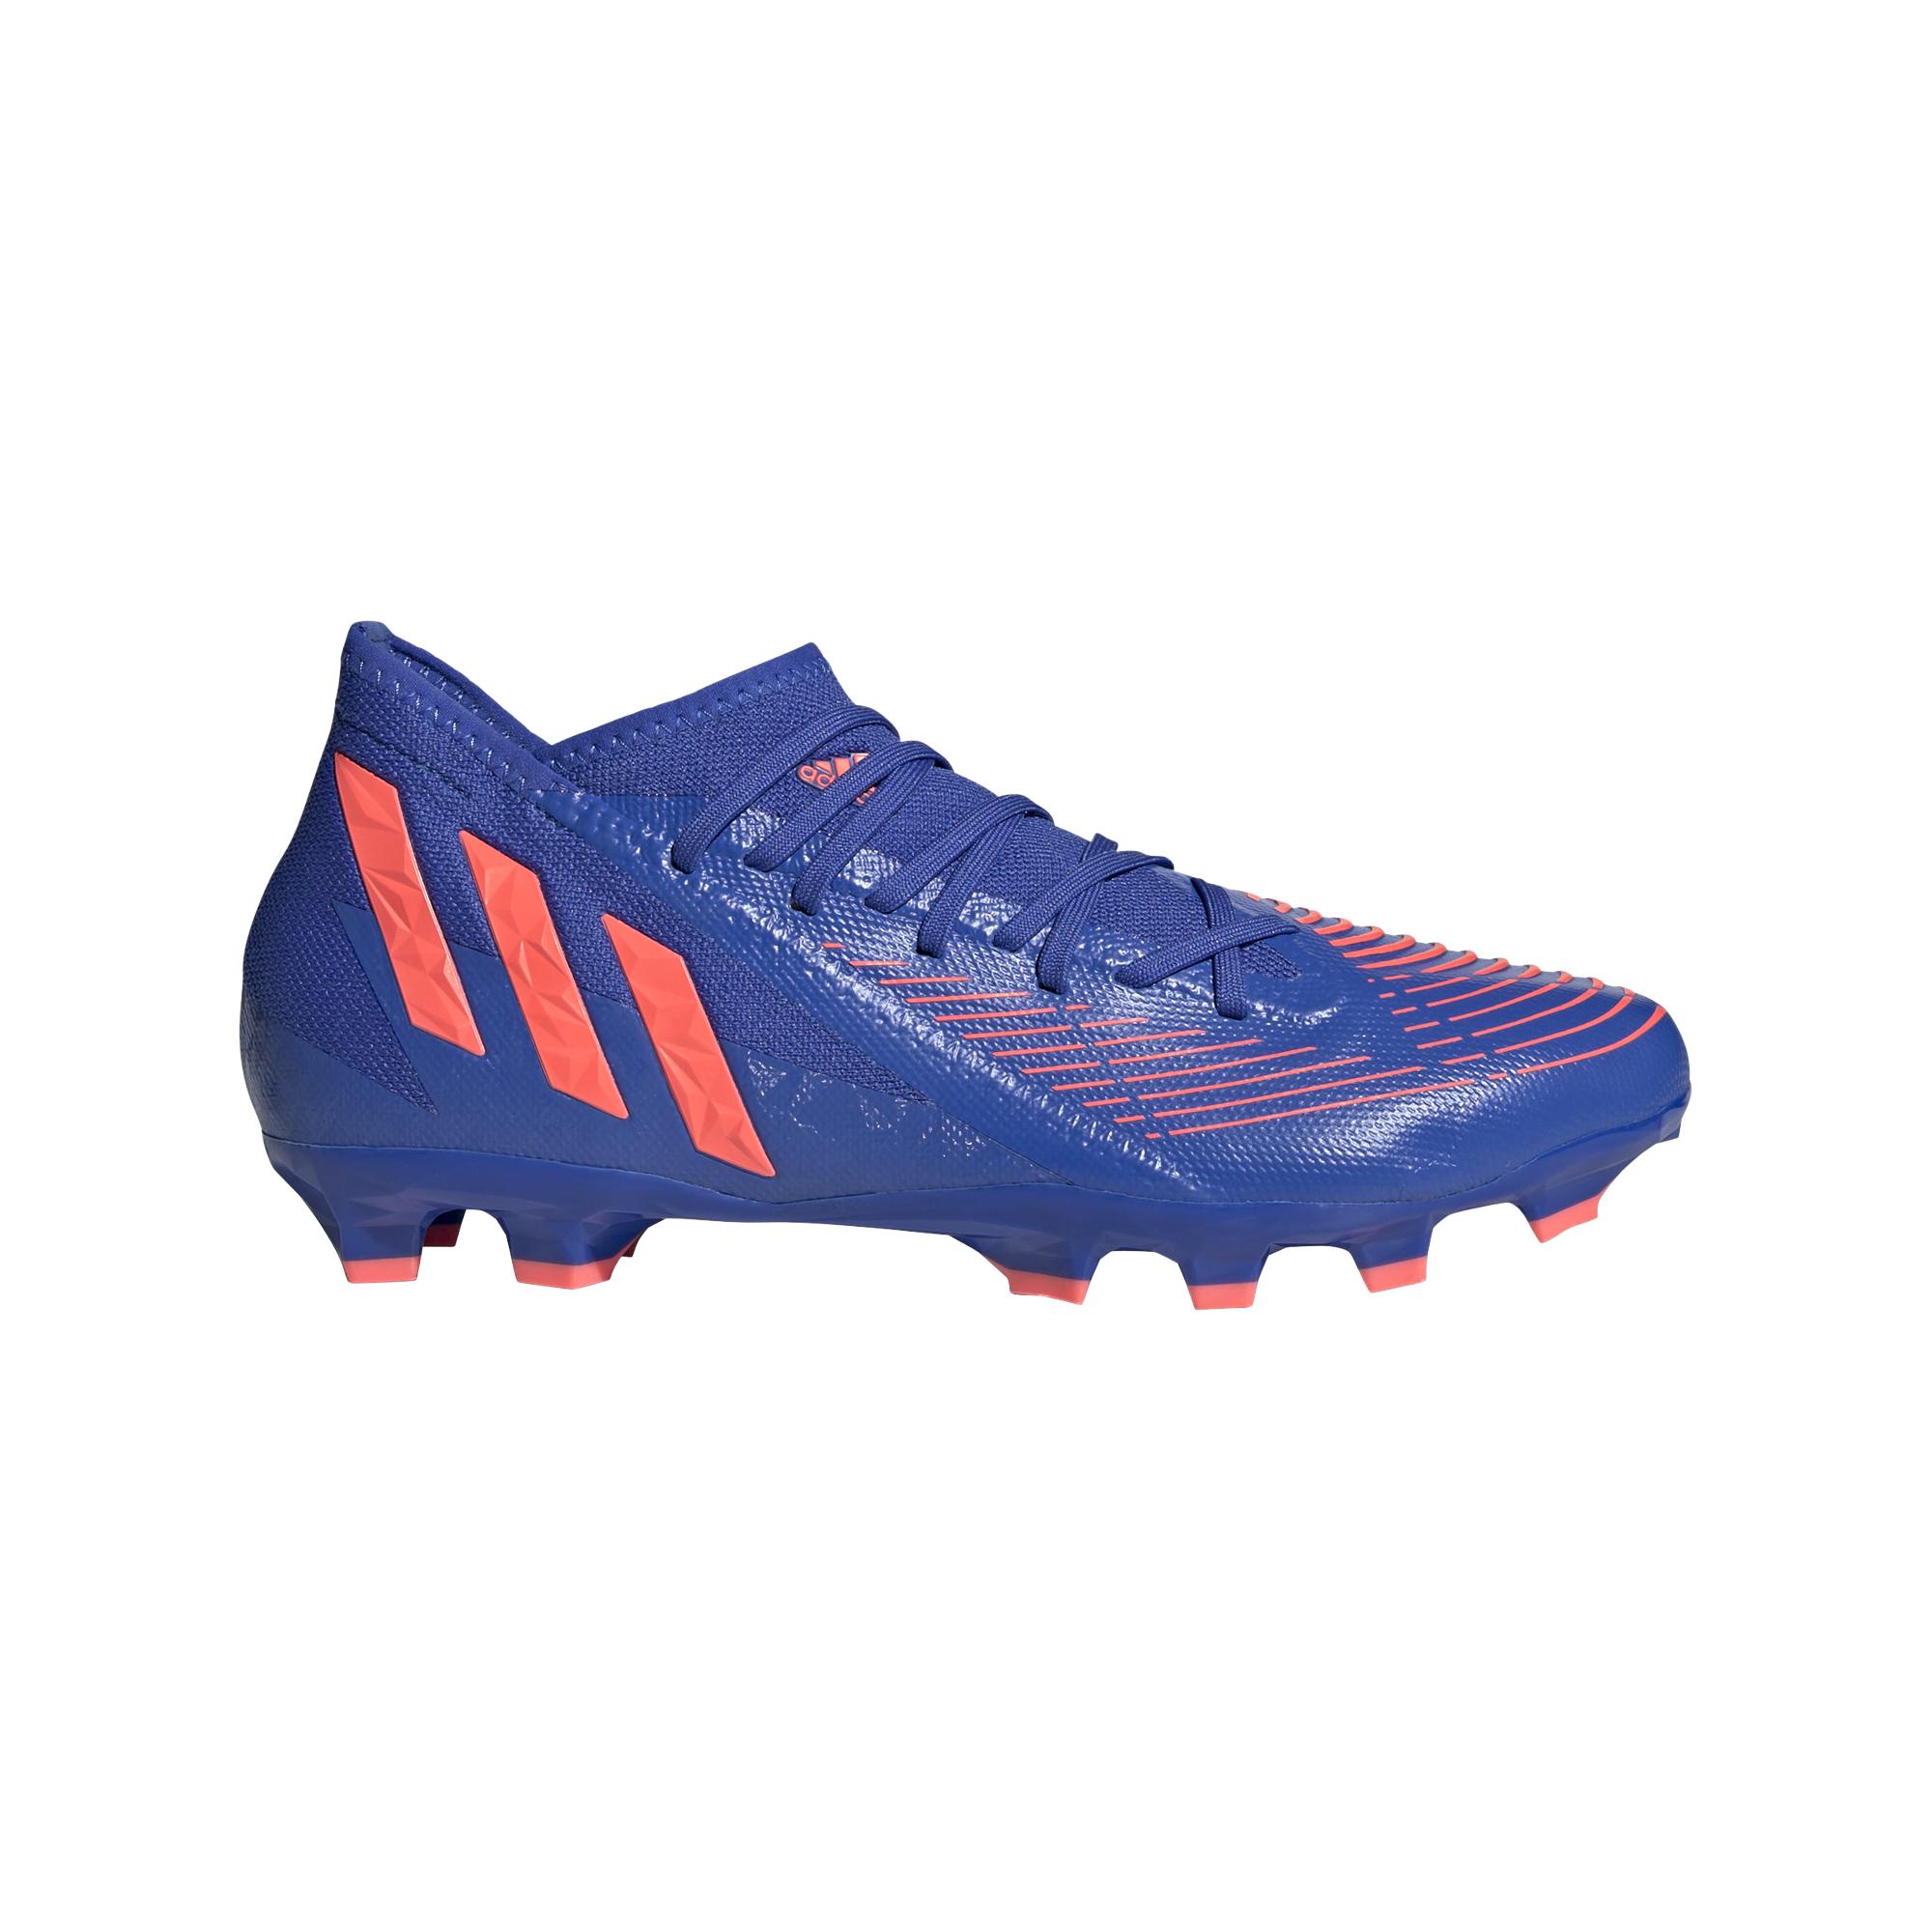 Adidas Football Shoes Predator Edge .3 Mg